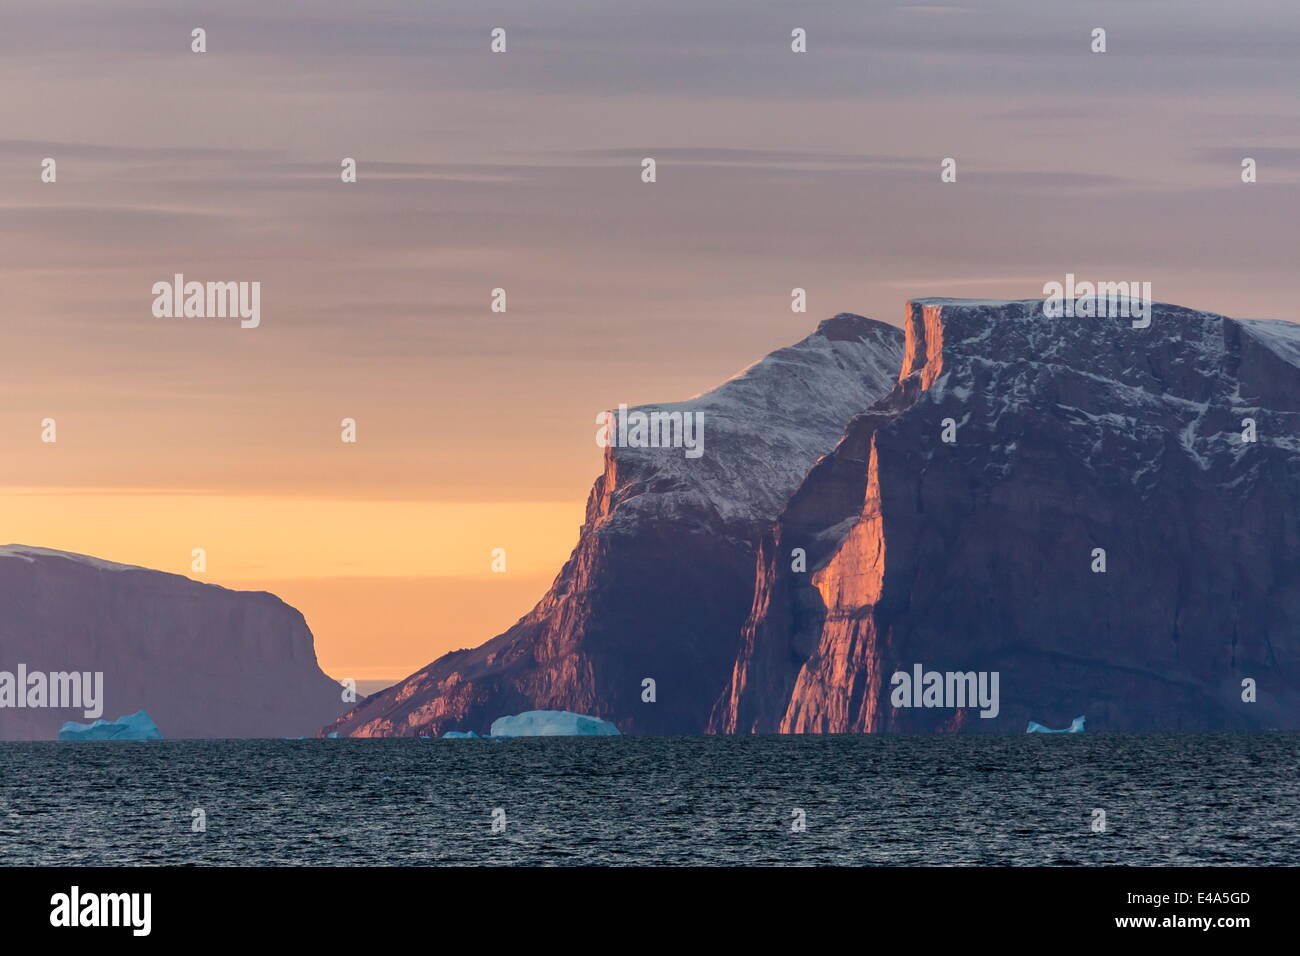 La mattina presto sunrise vicino Qilakitsoq, Groenlandia, regioni polari Foto Stock